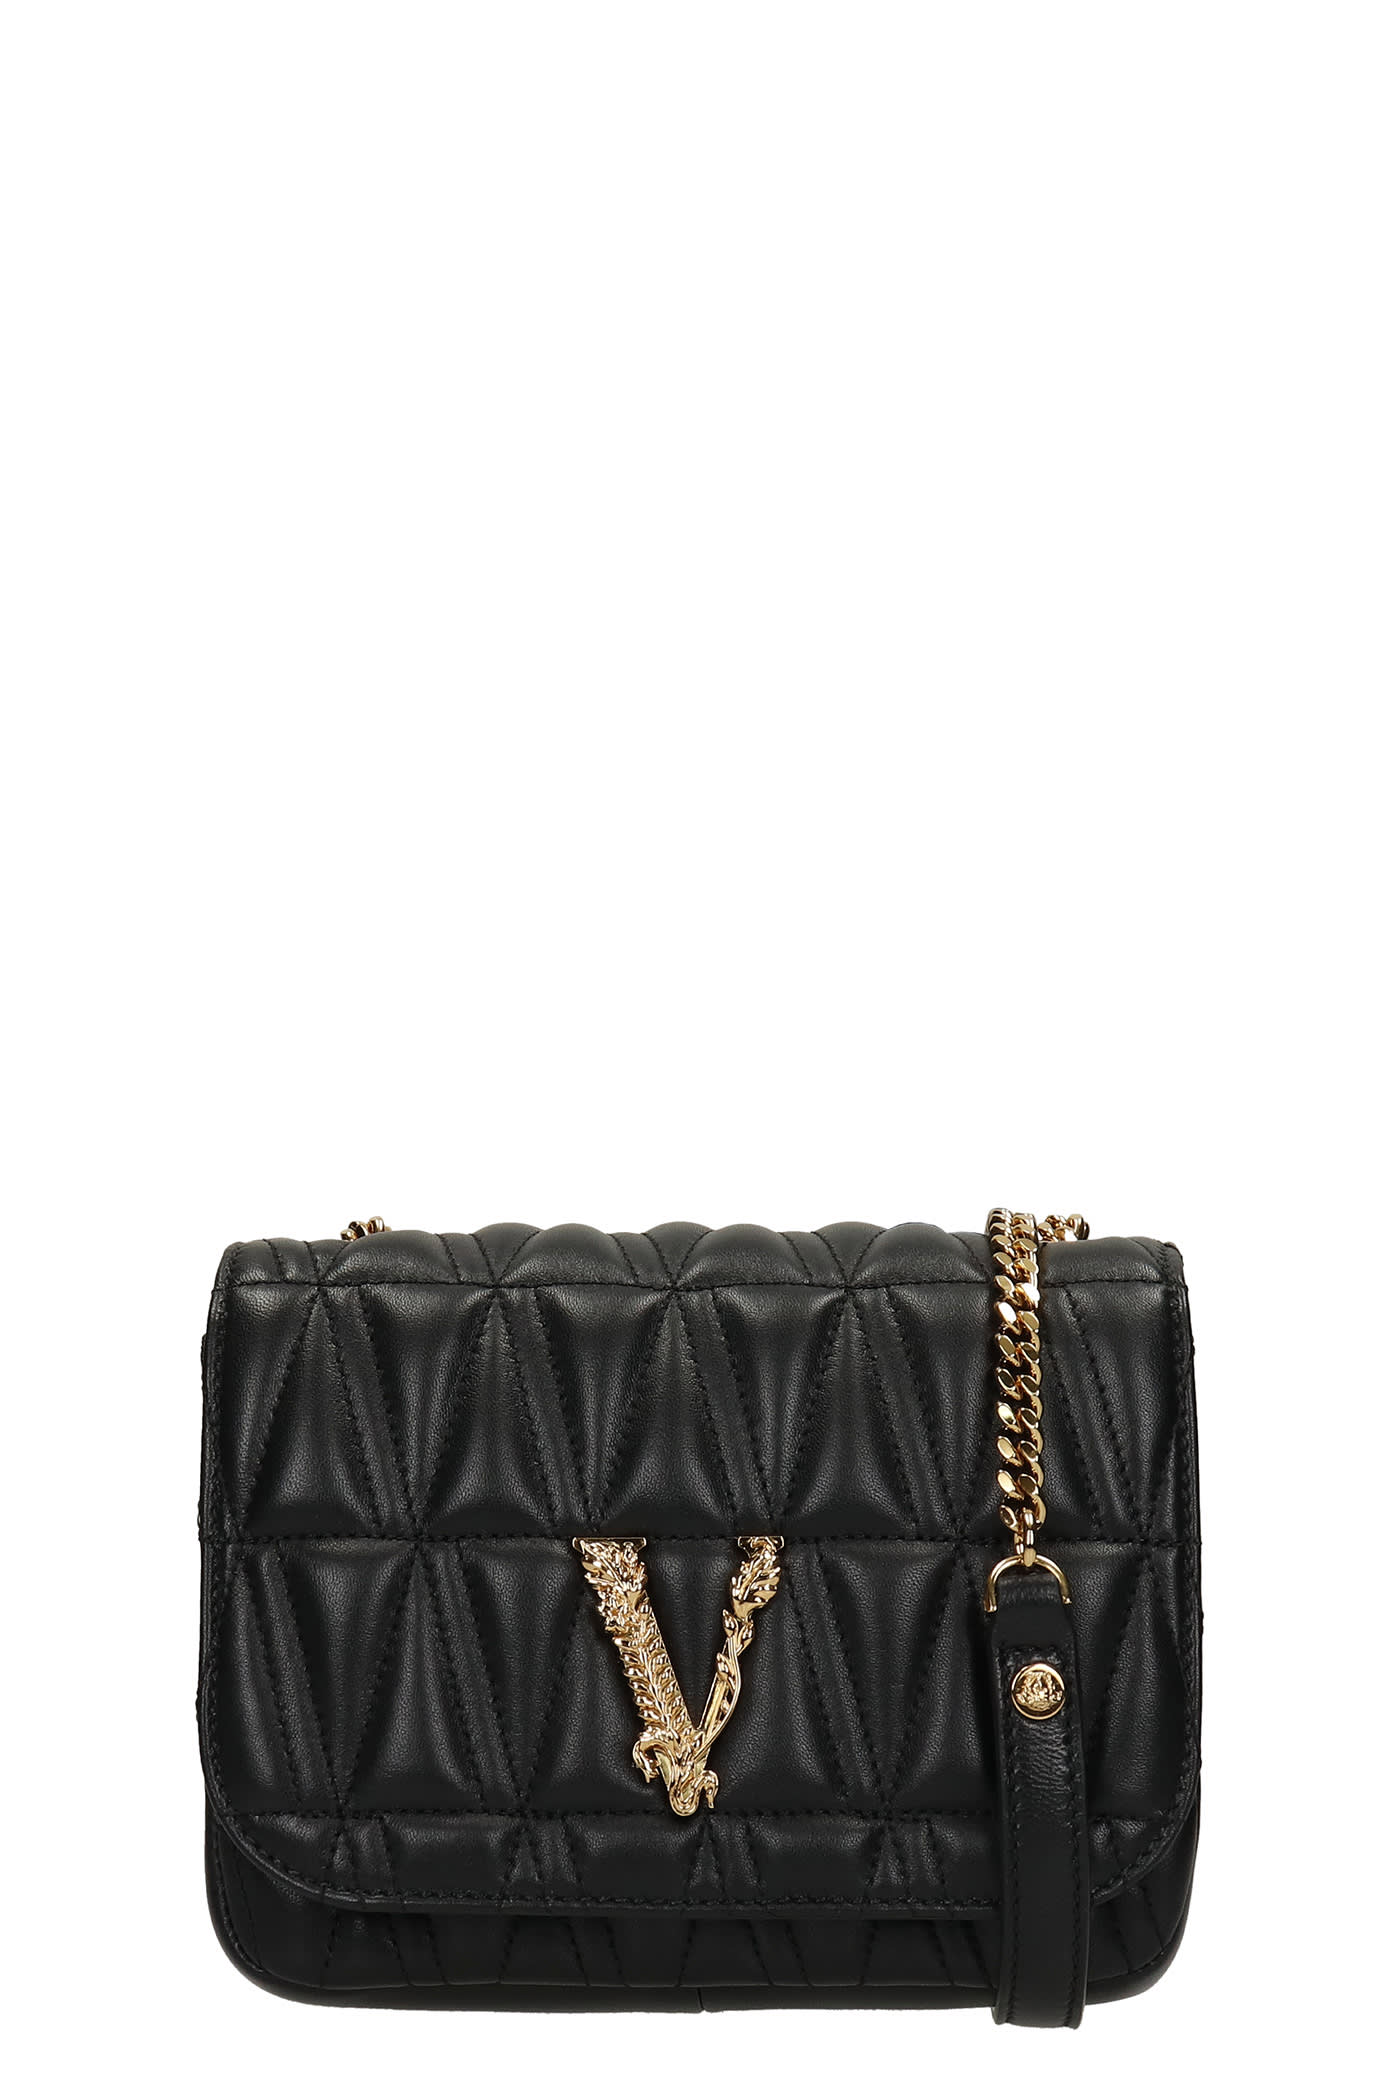 Versace Virtus Shoulder Bag In Black Leather